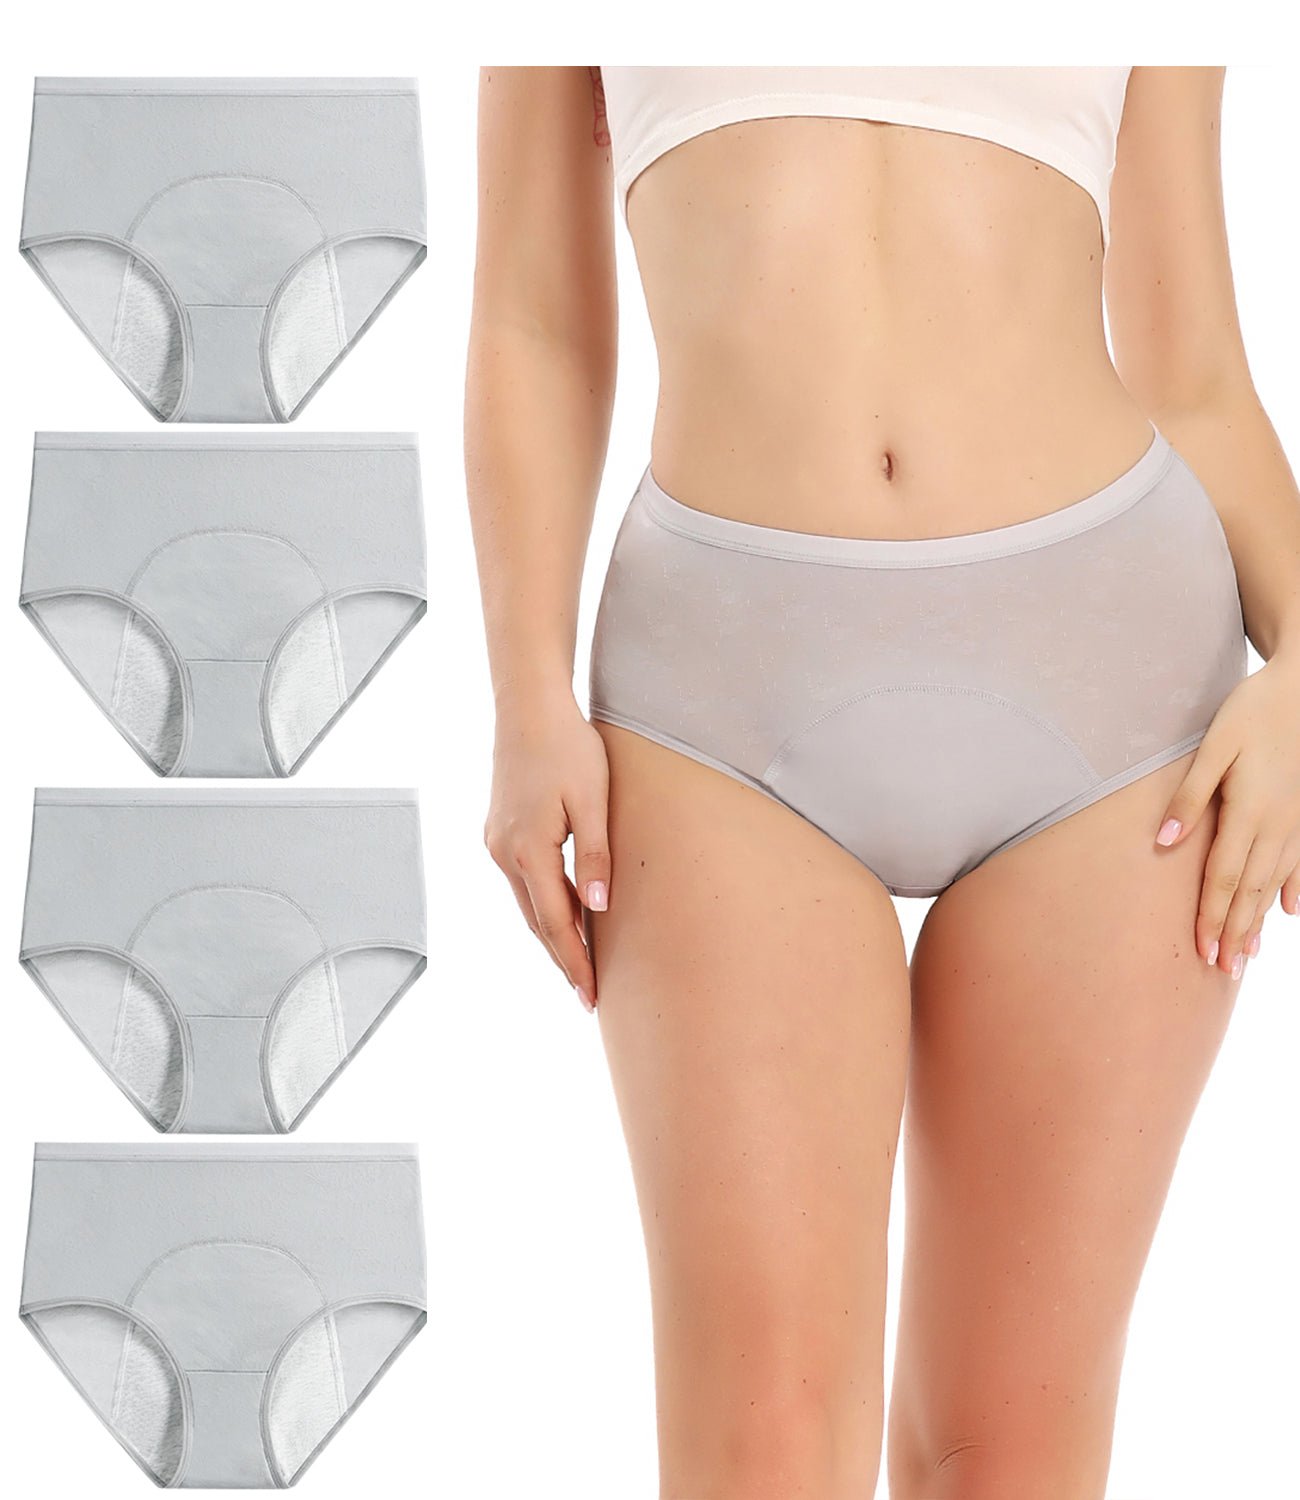 wirarpa Women's Period Panties Girls Leakproof Underwear Postpartum Briefs